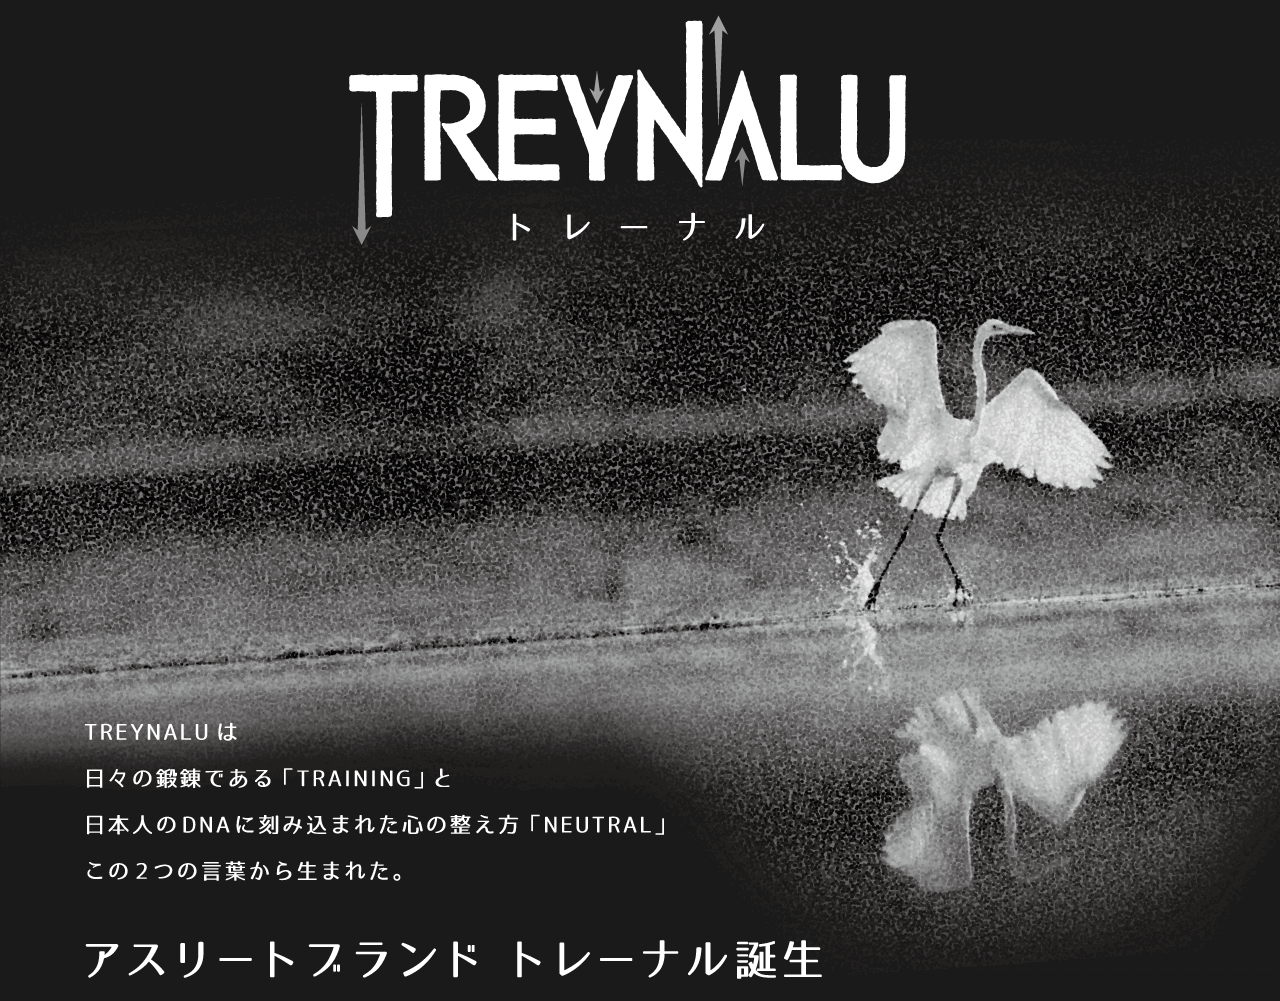 TREYNALU　トレーナルは日々の鍛錬である「トレーニング」と日本人のDNAに刻み込まれた心の整え方「ニュートラル」この二つの言葉から生まれた。　アスリートブランド　トレーナル誕生